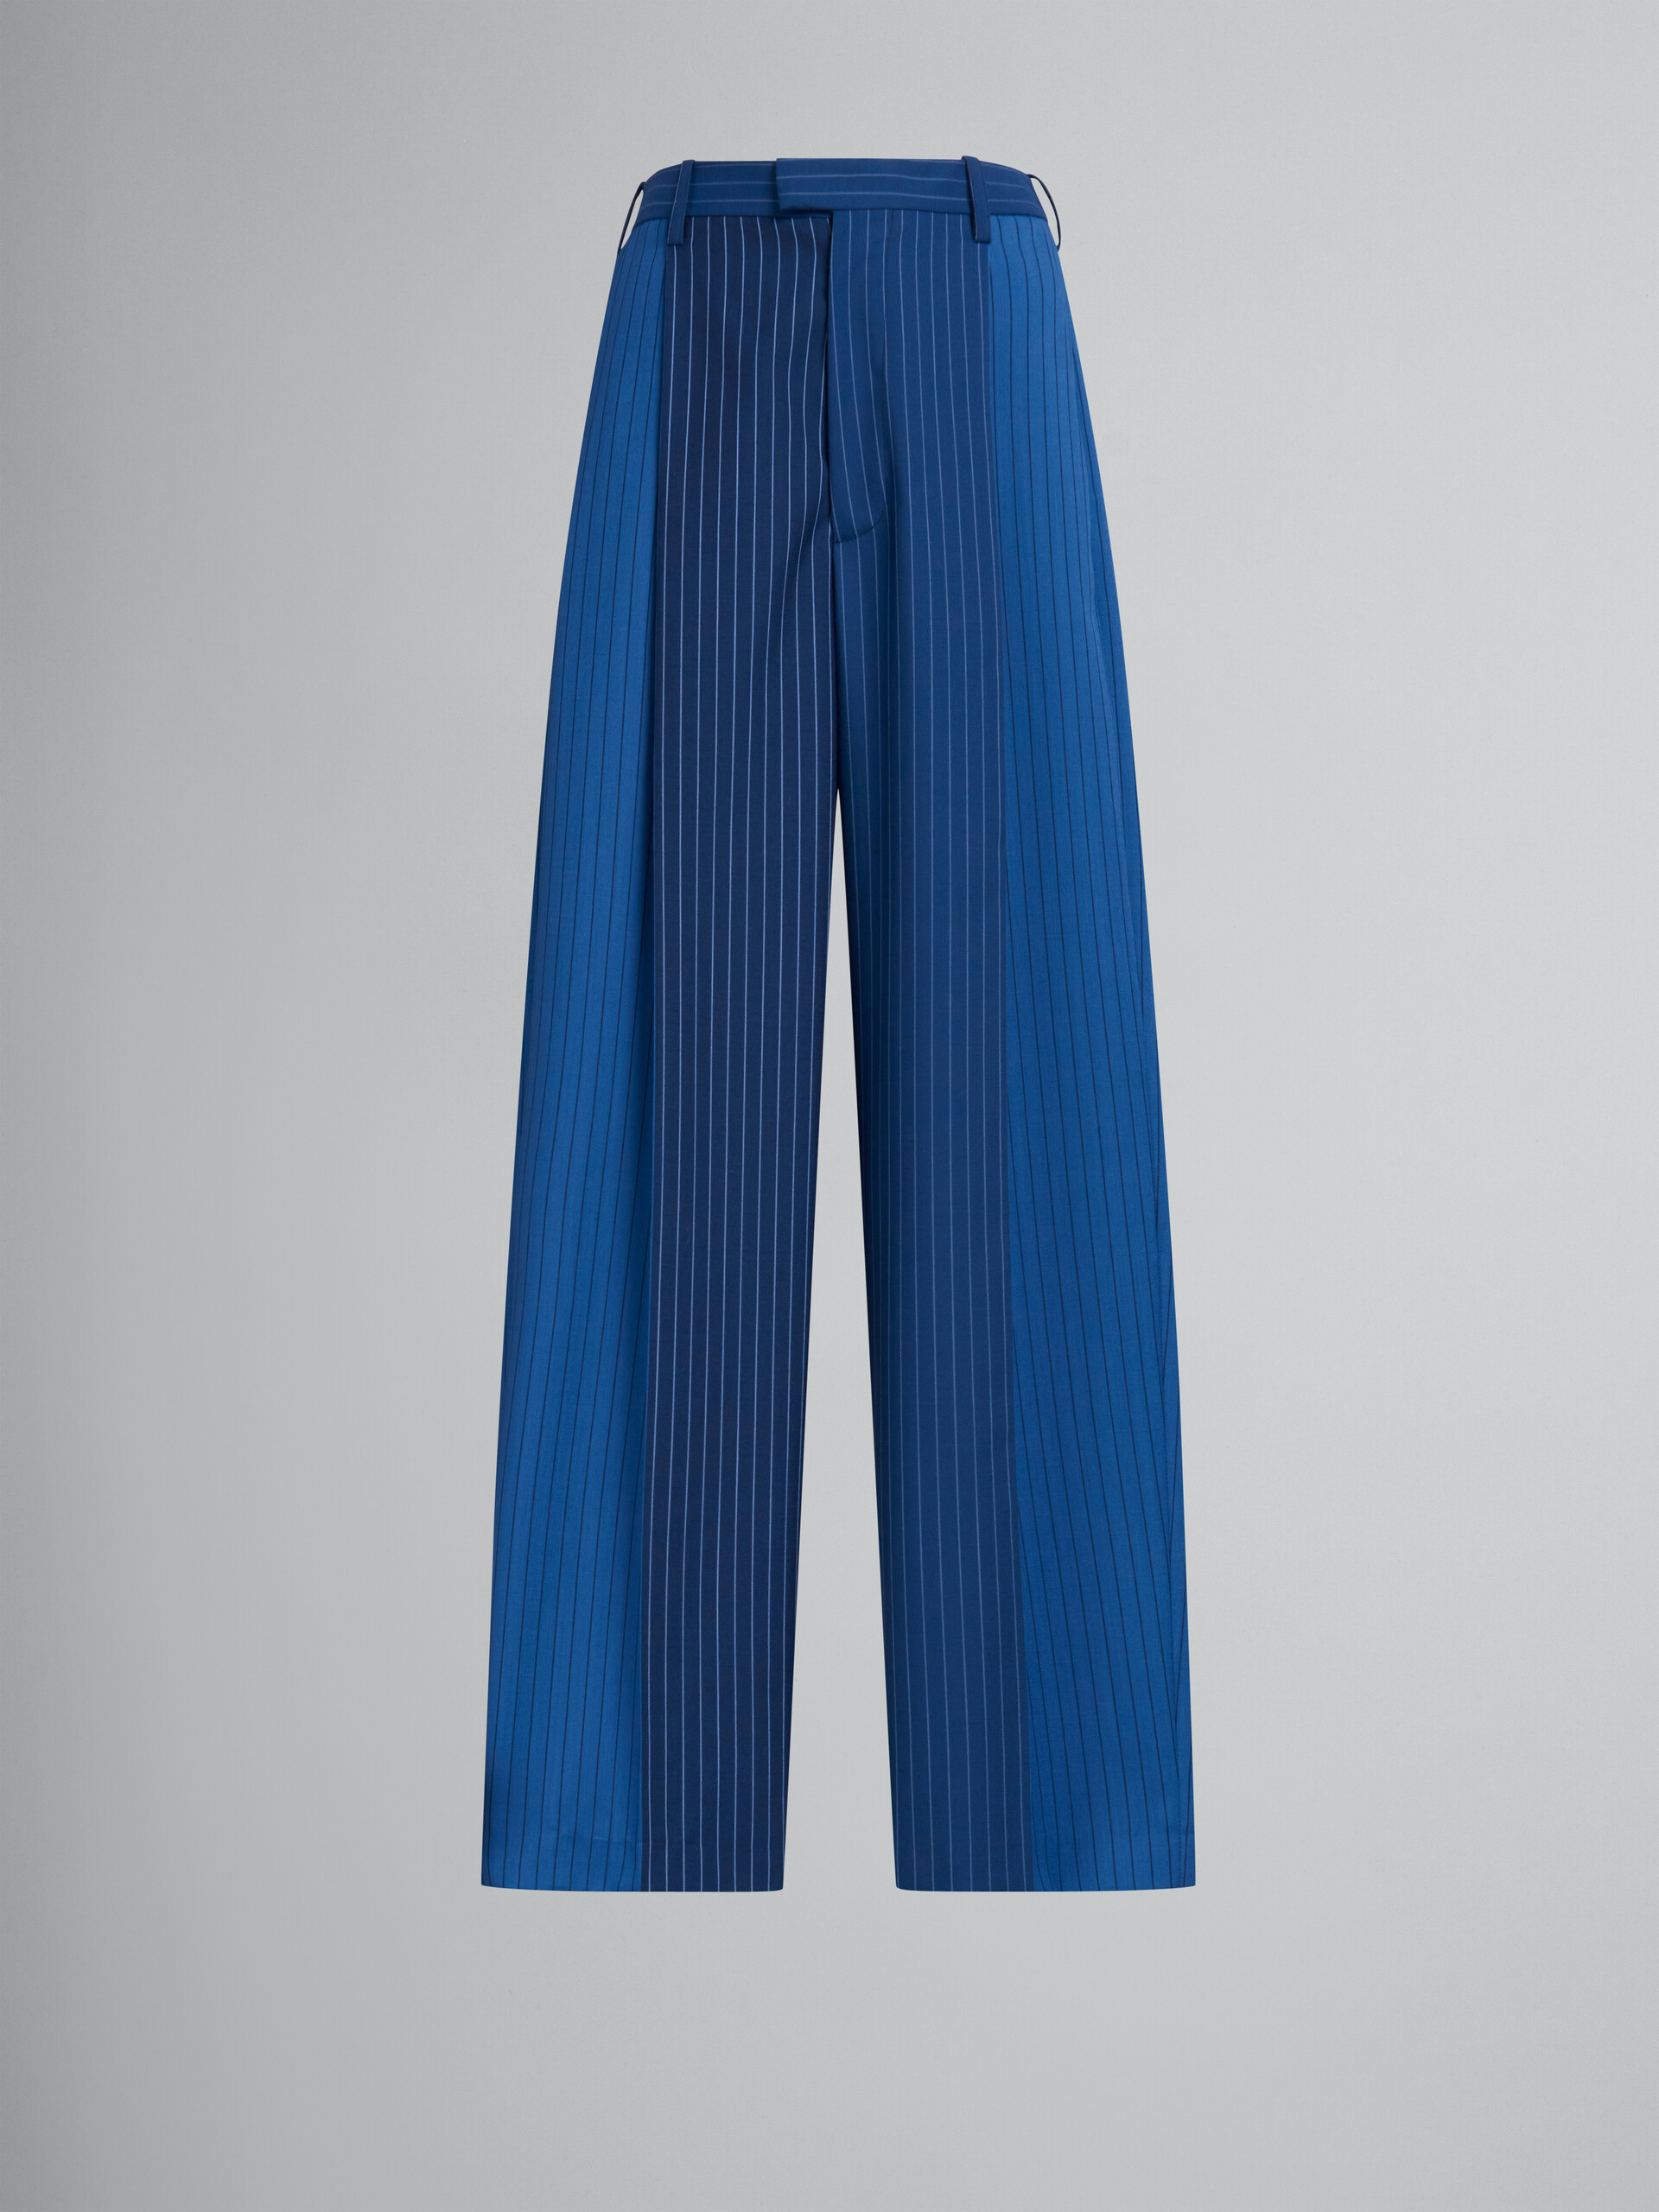 Blue dégradé pinstripe wool trousers - Pants - Image 1